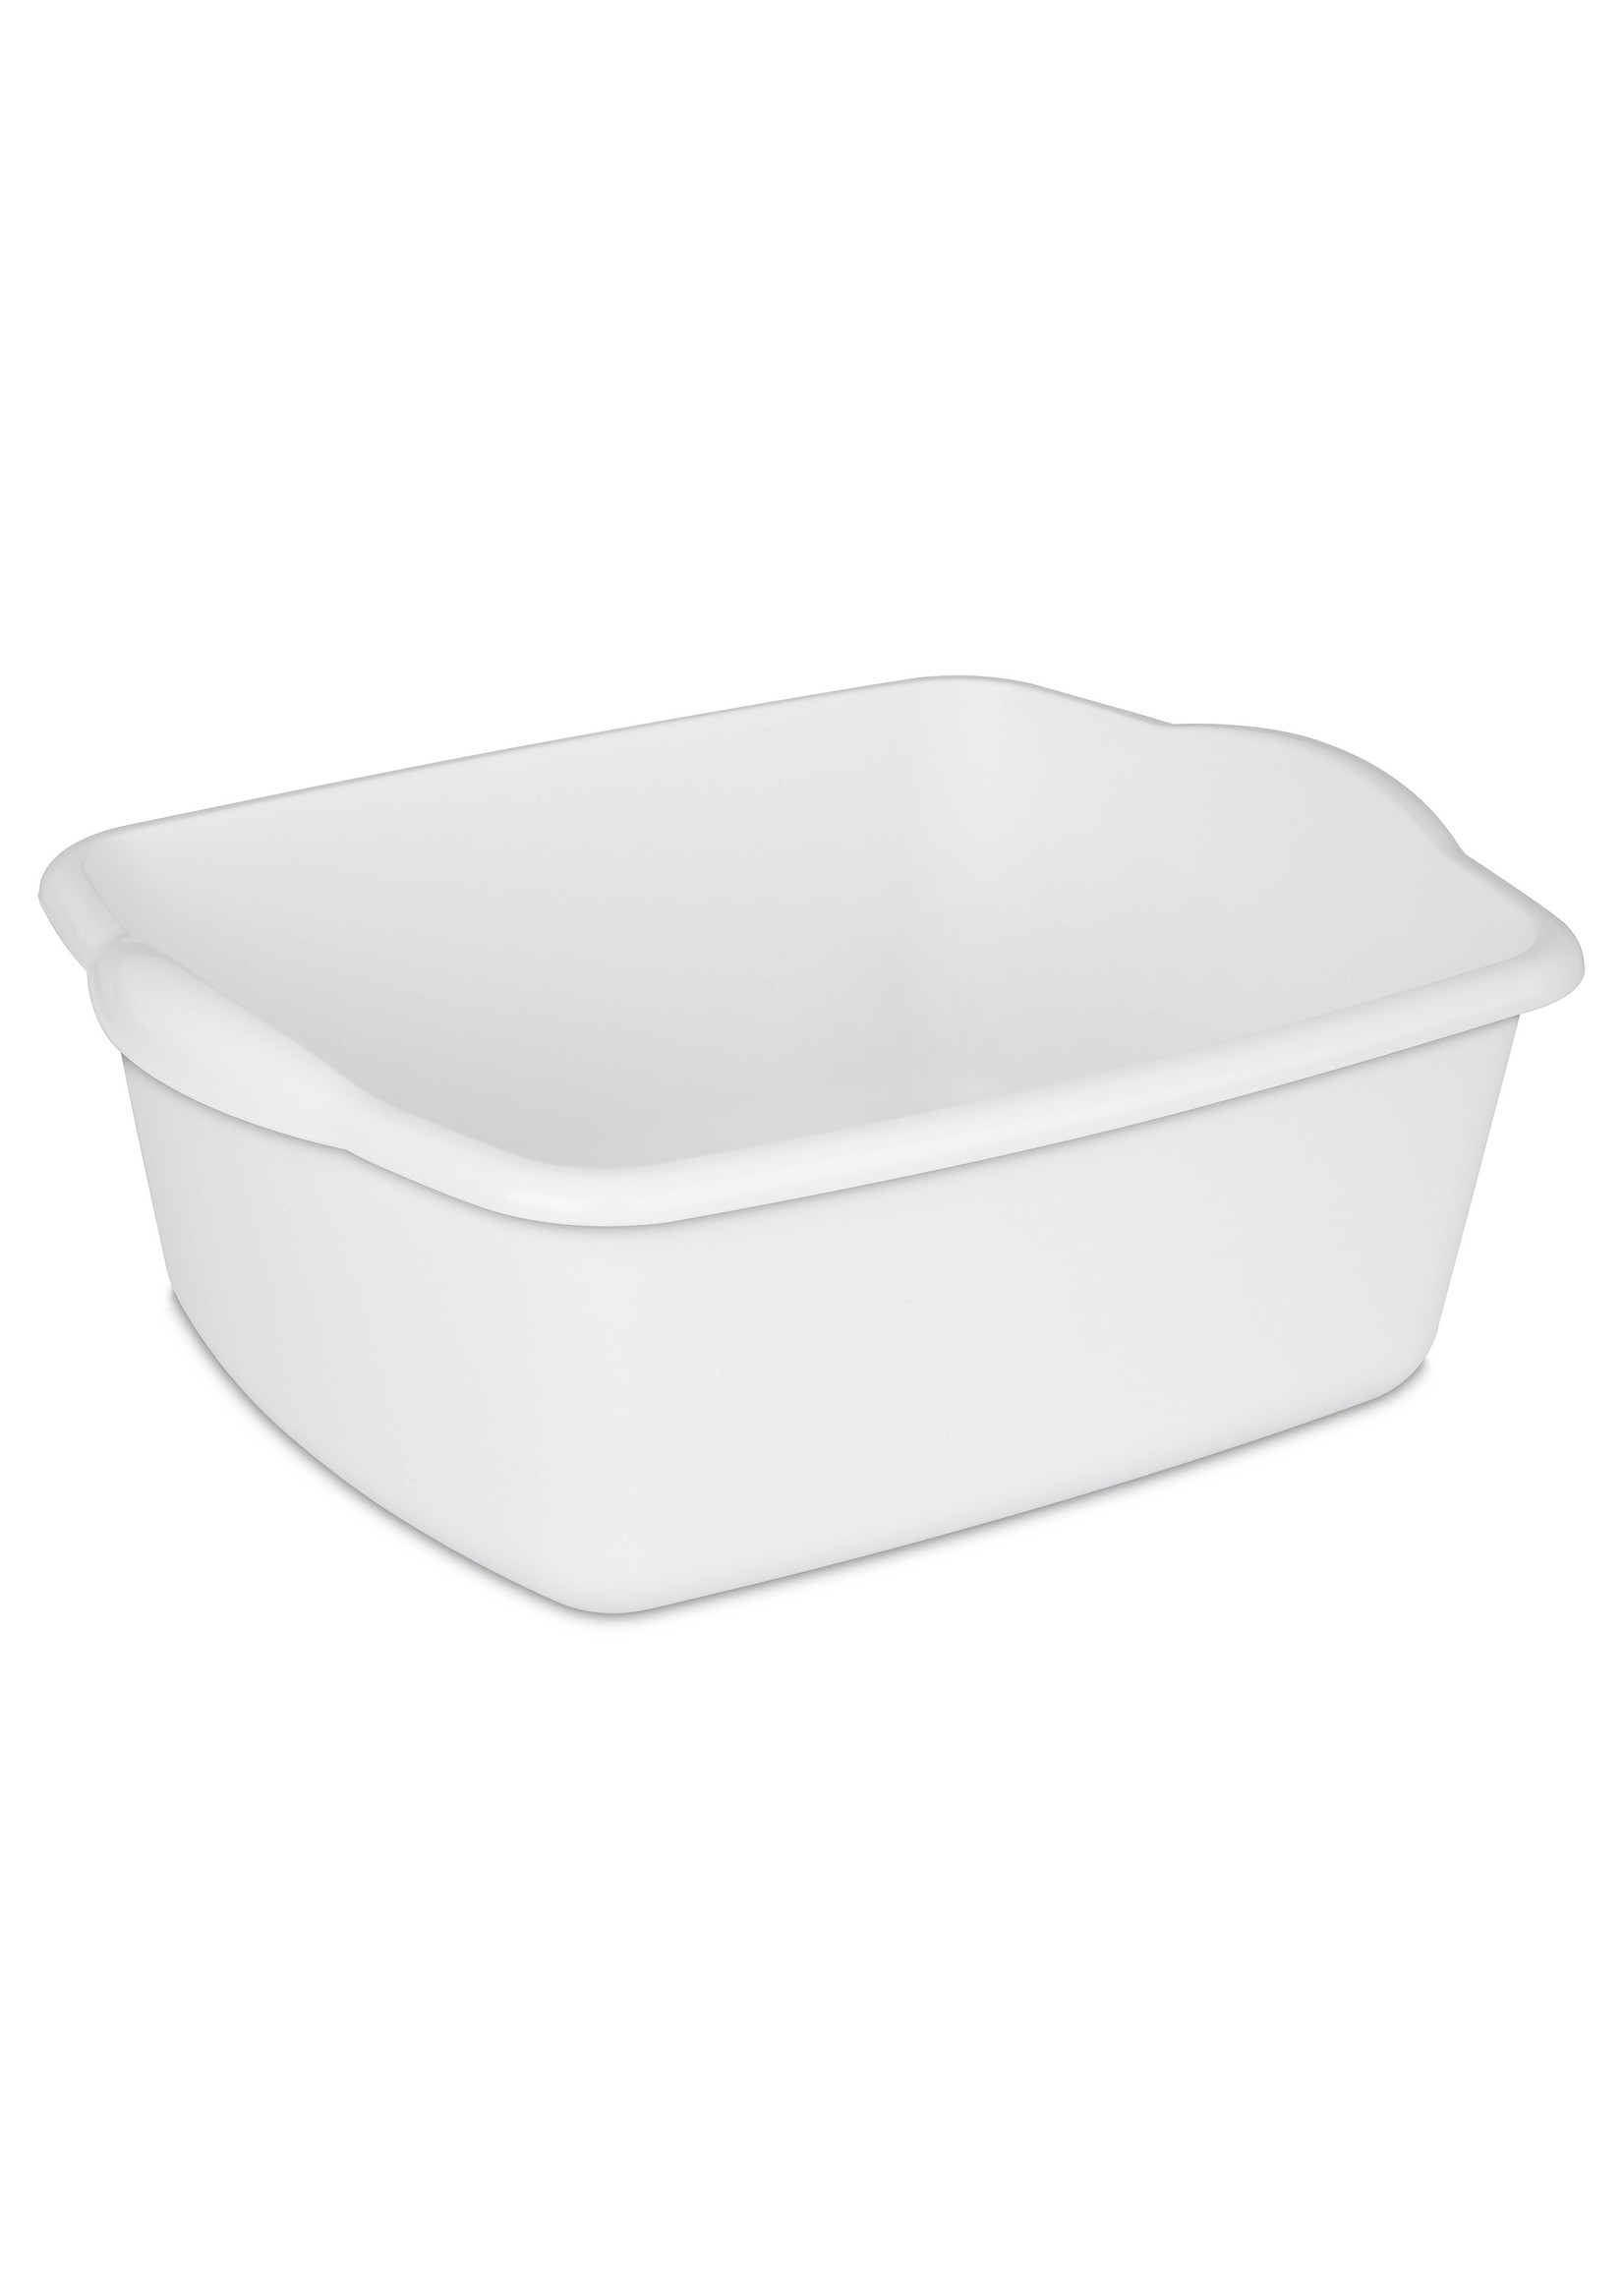 B2 FASHIONS INC 11.4 L White Dishpan